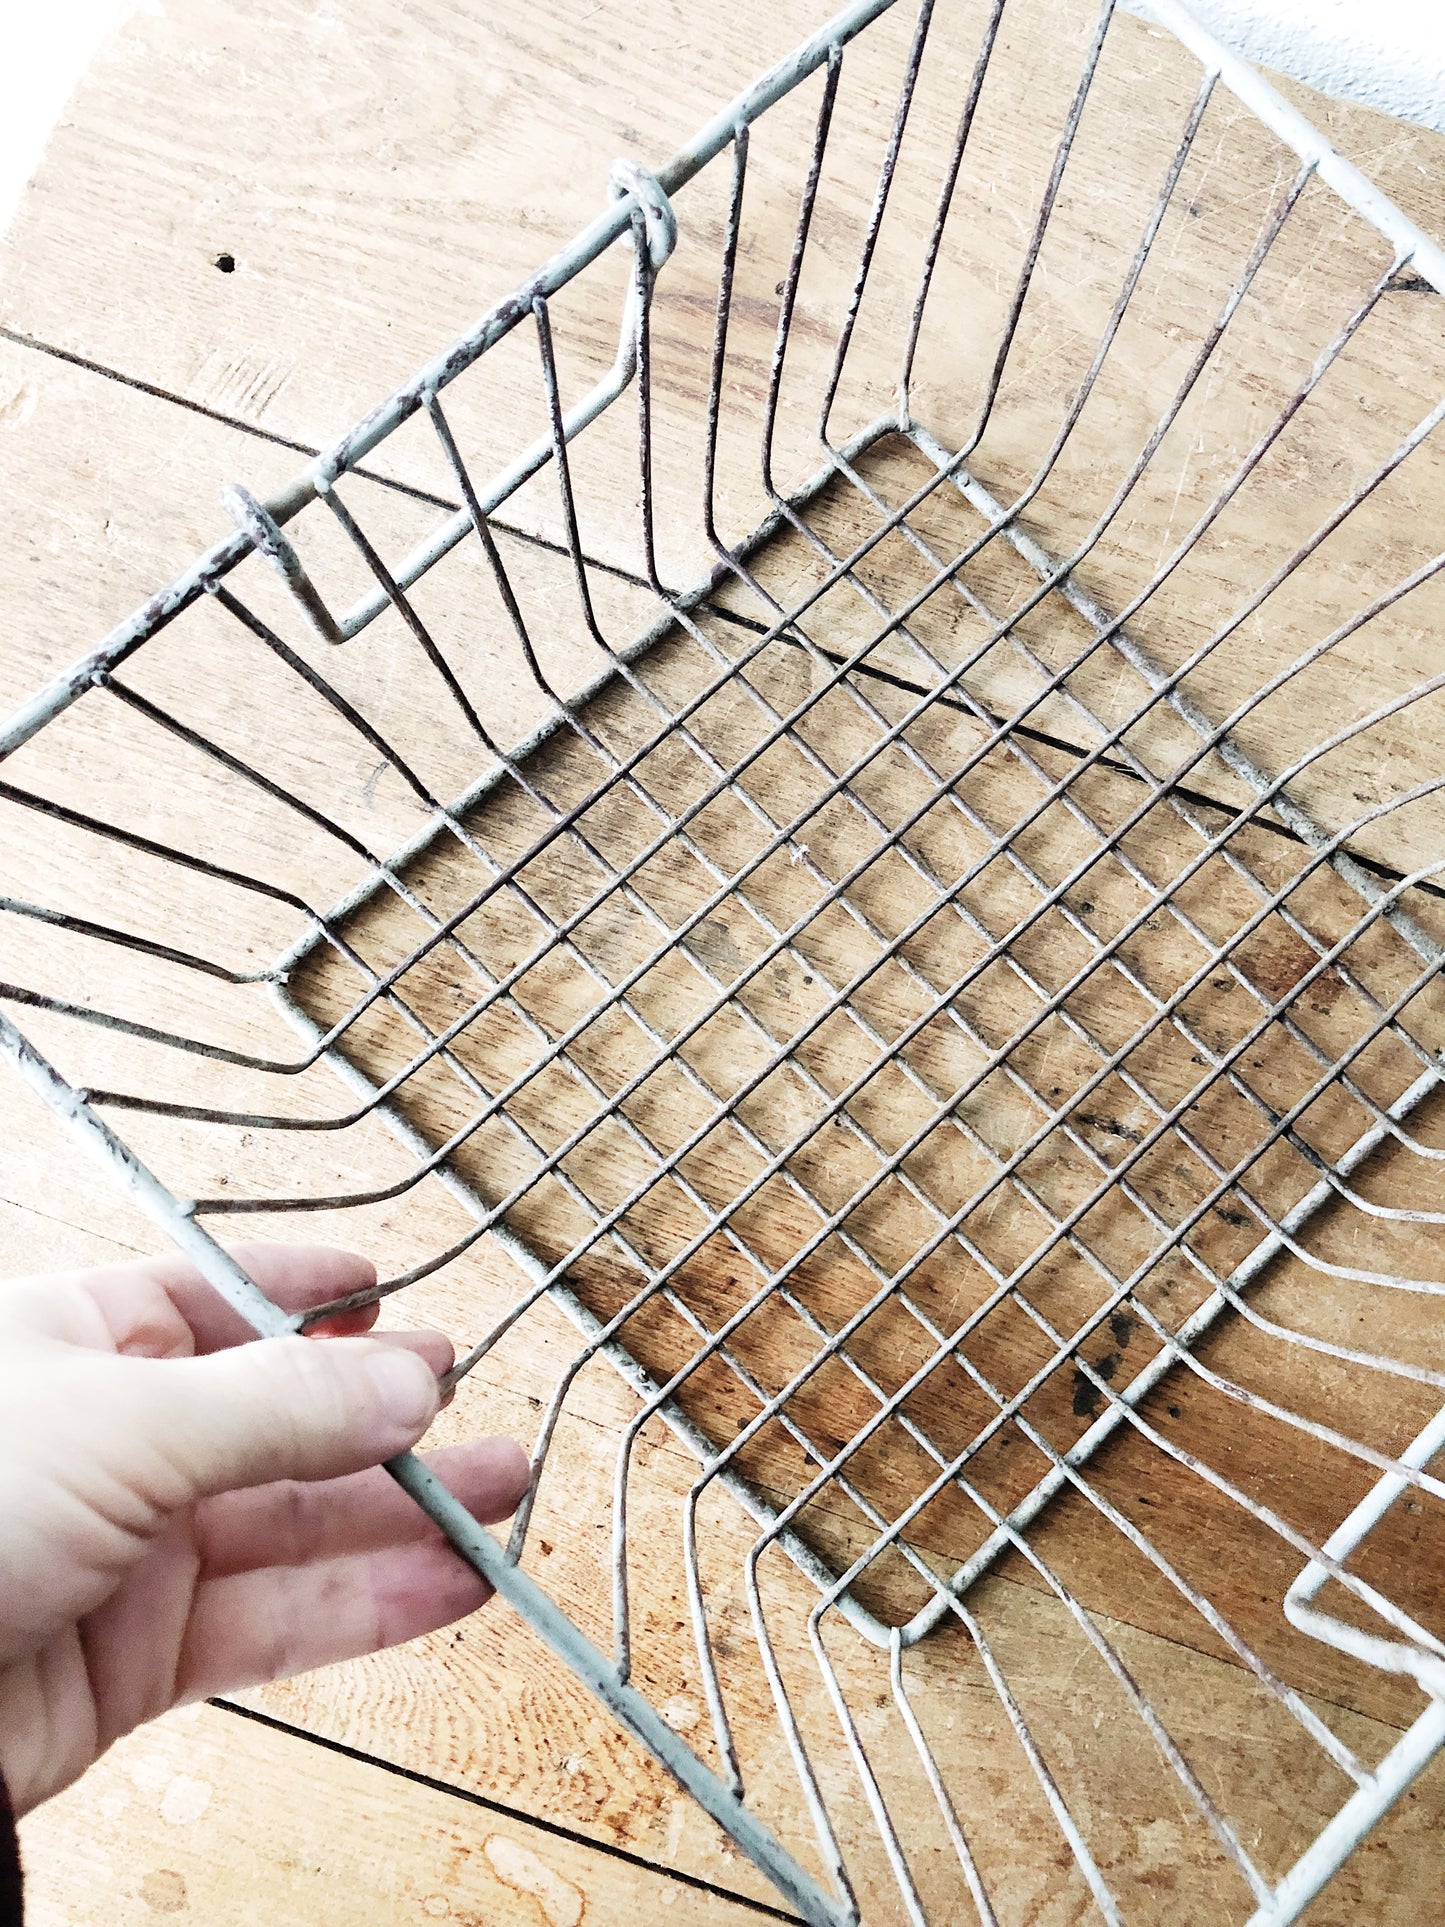 Vintage Wire Locker Basket